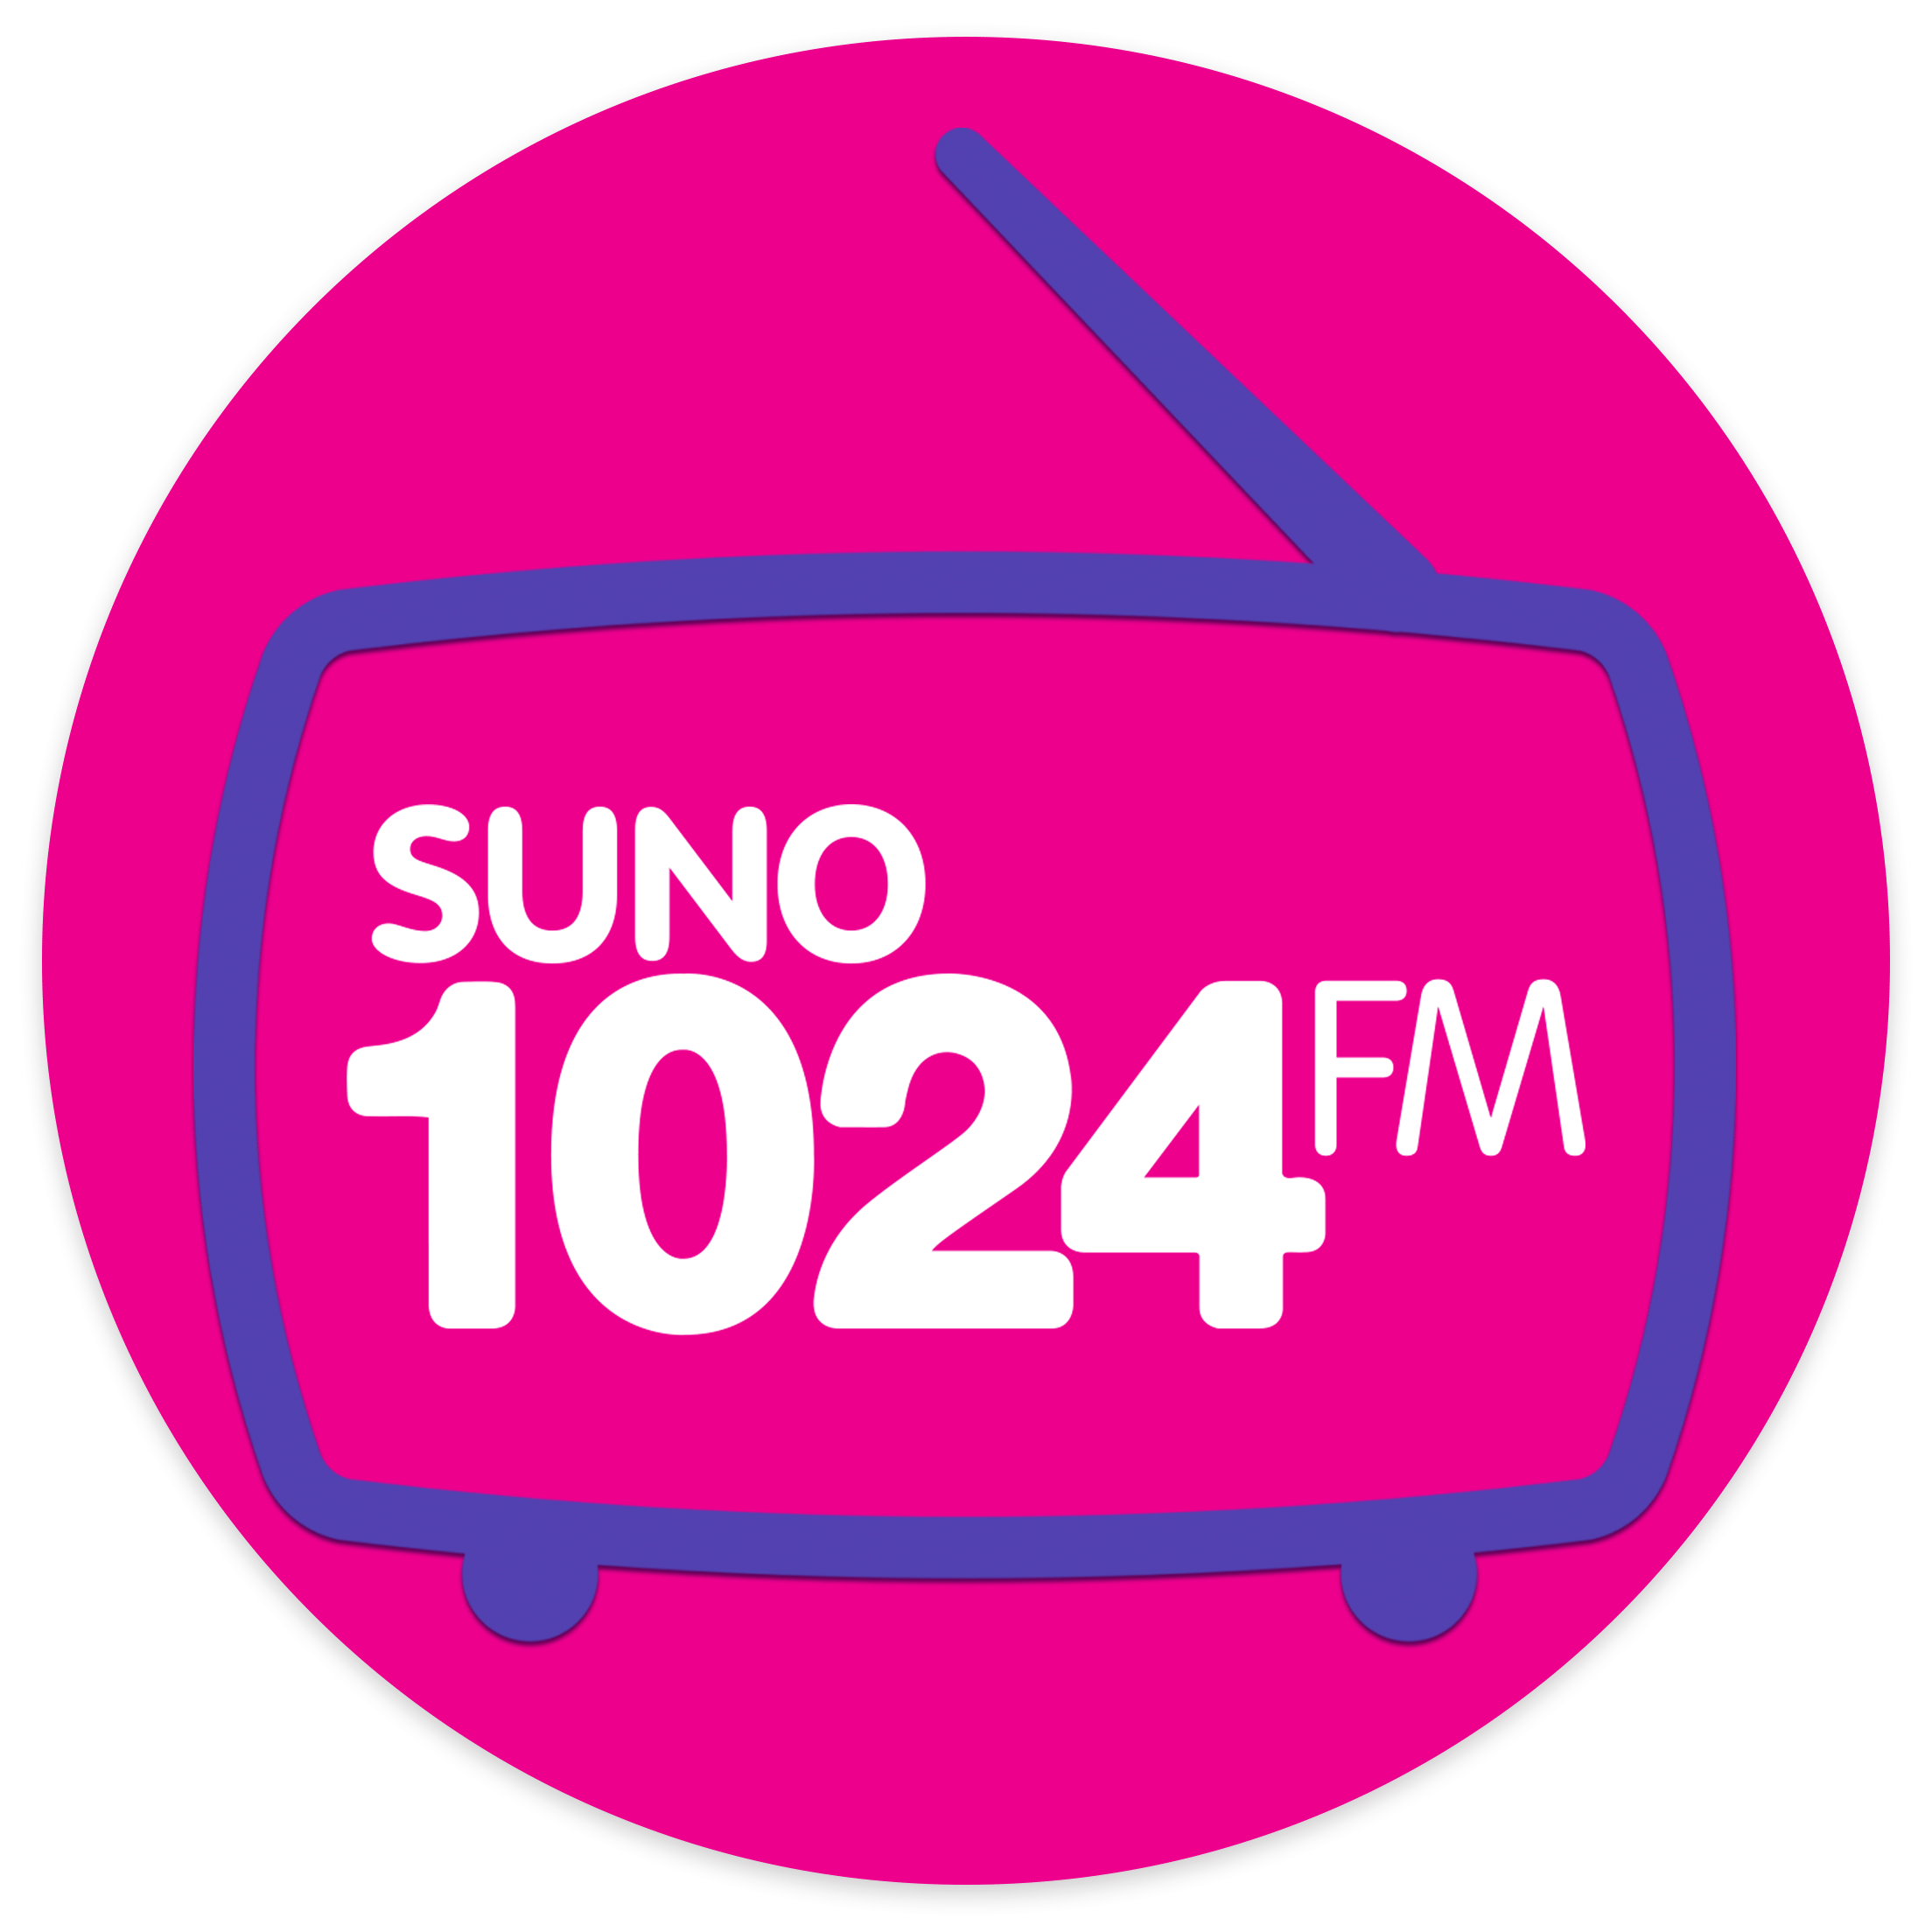 Suno1024 FM